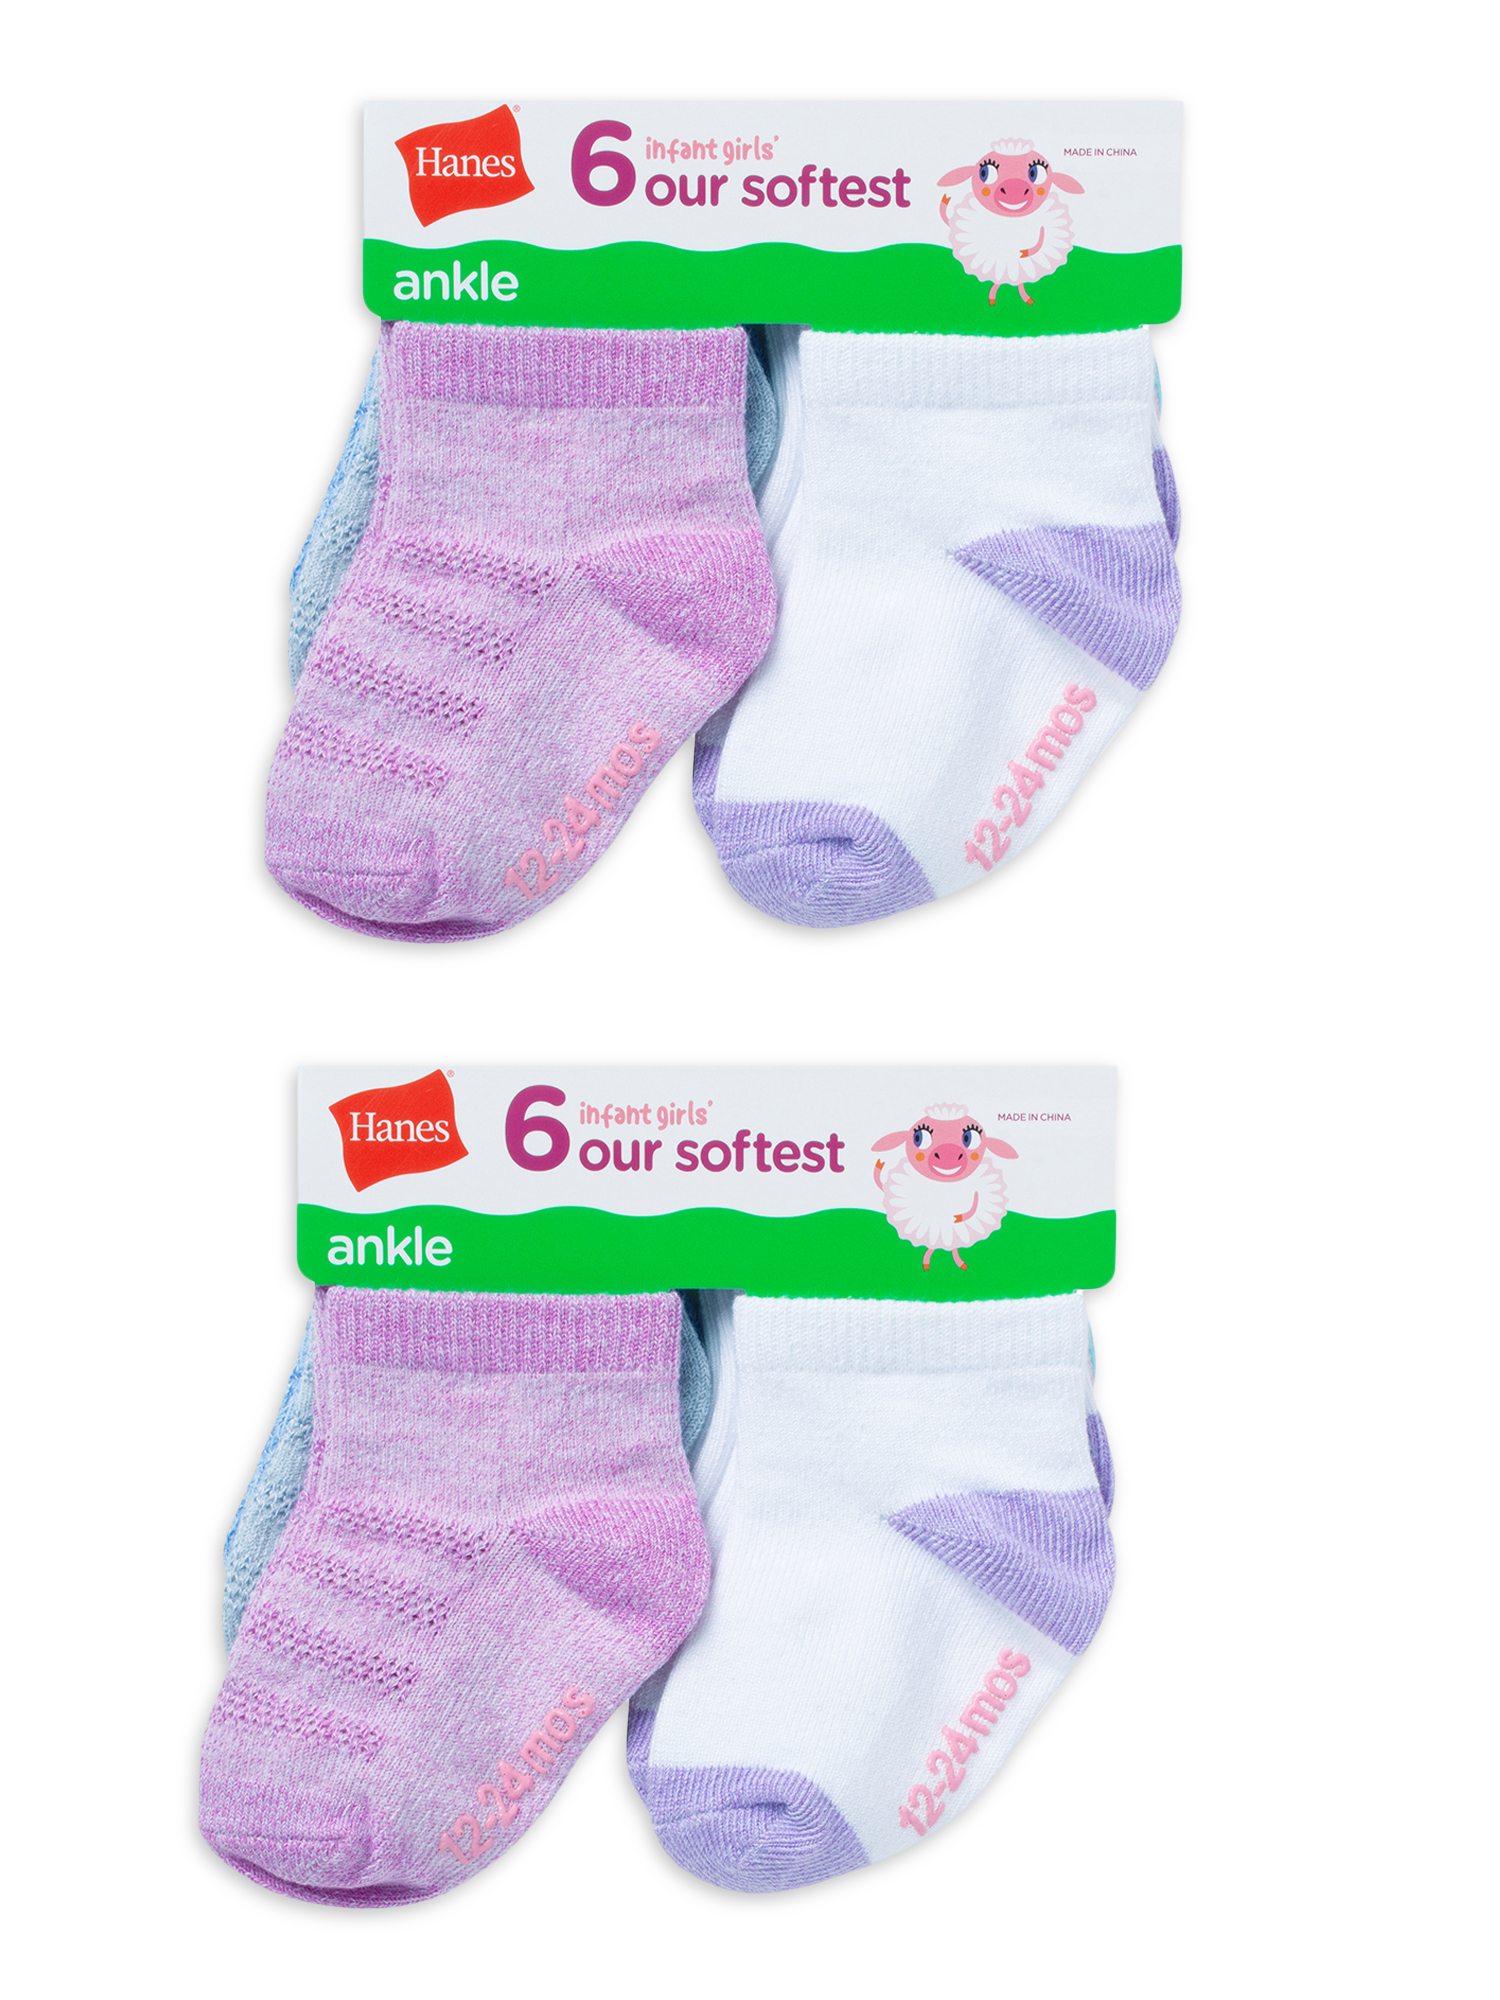 Hanes Toddler Girl Ankle Socks, 12 Pack, Sizes 6M-5T - image 4 of 4